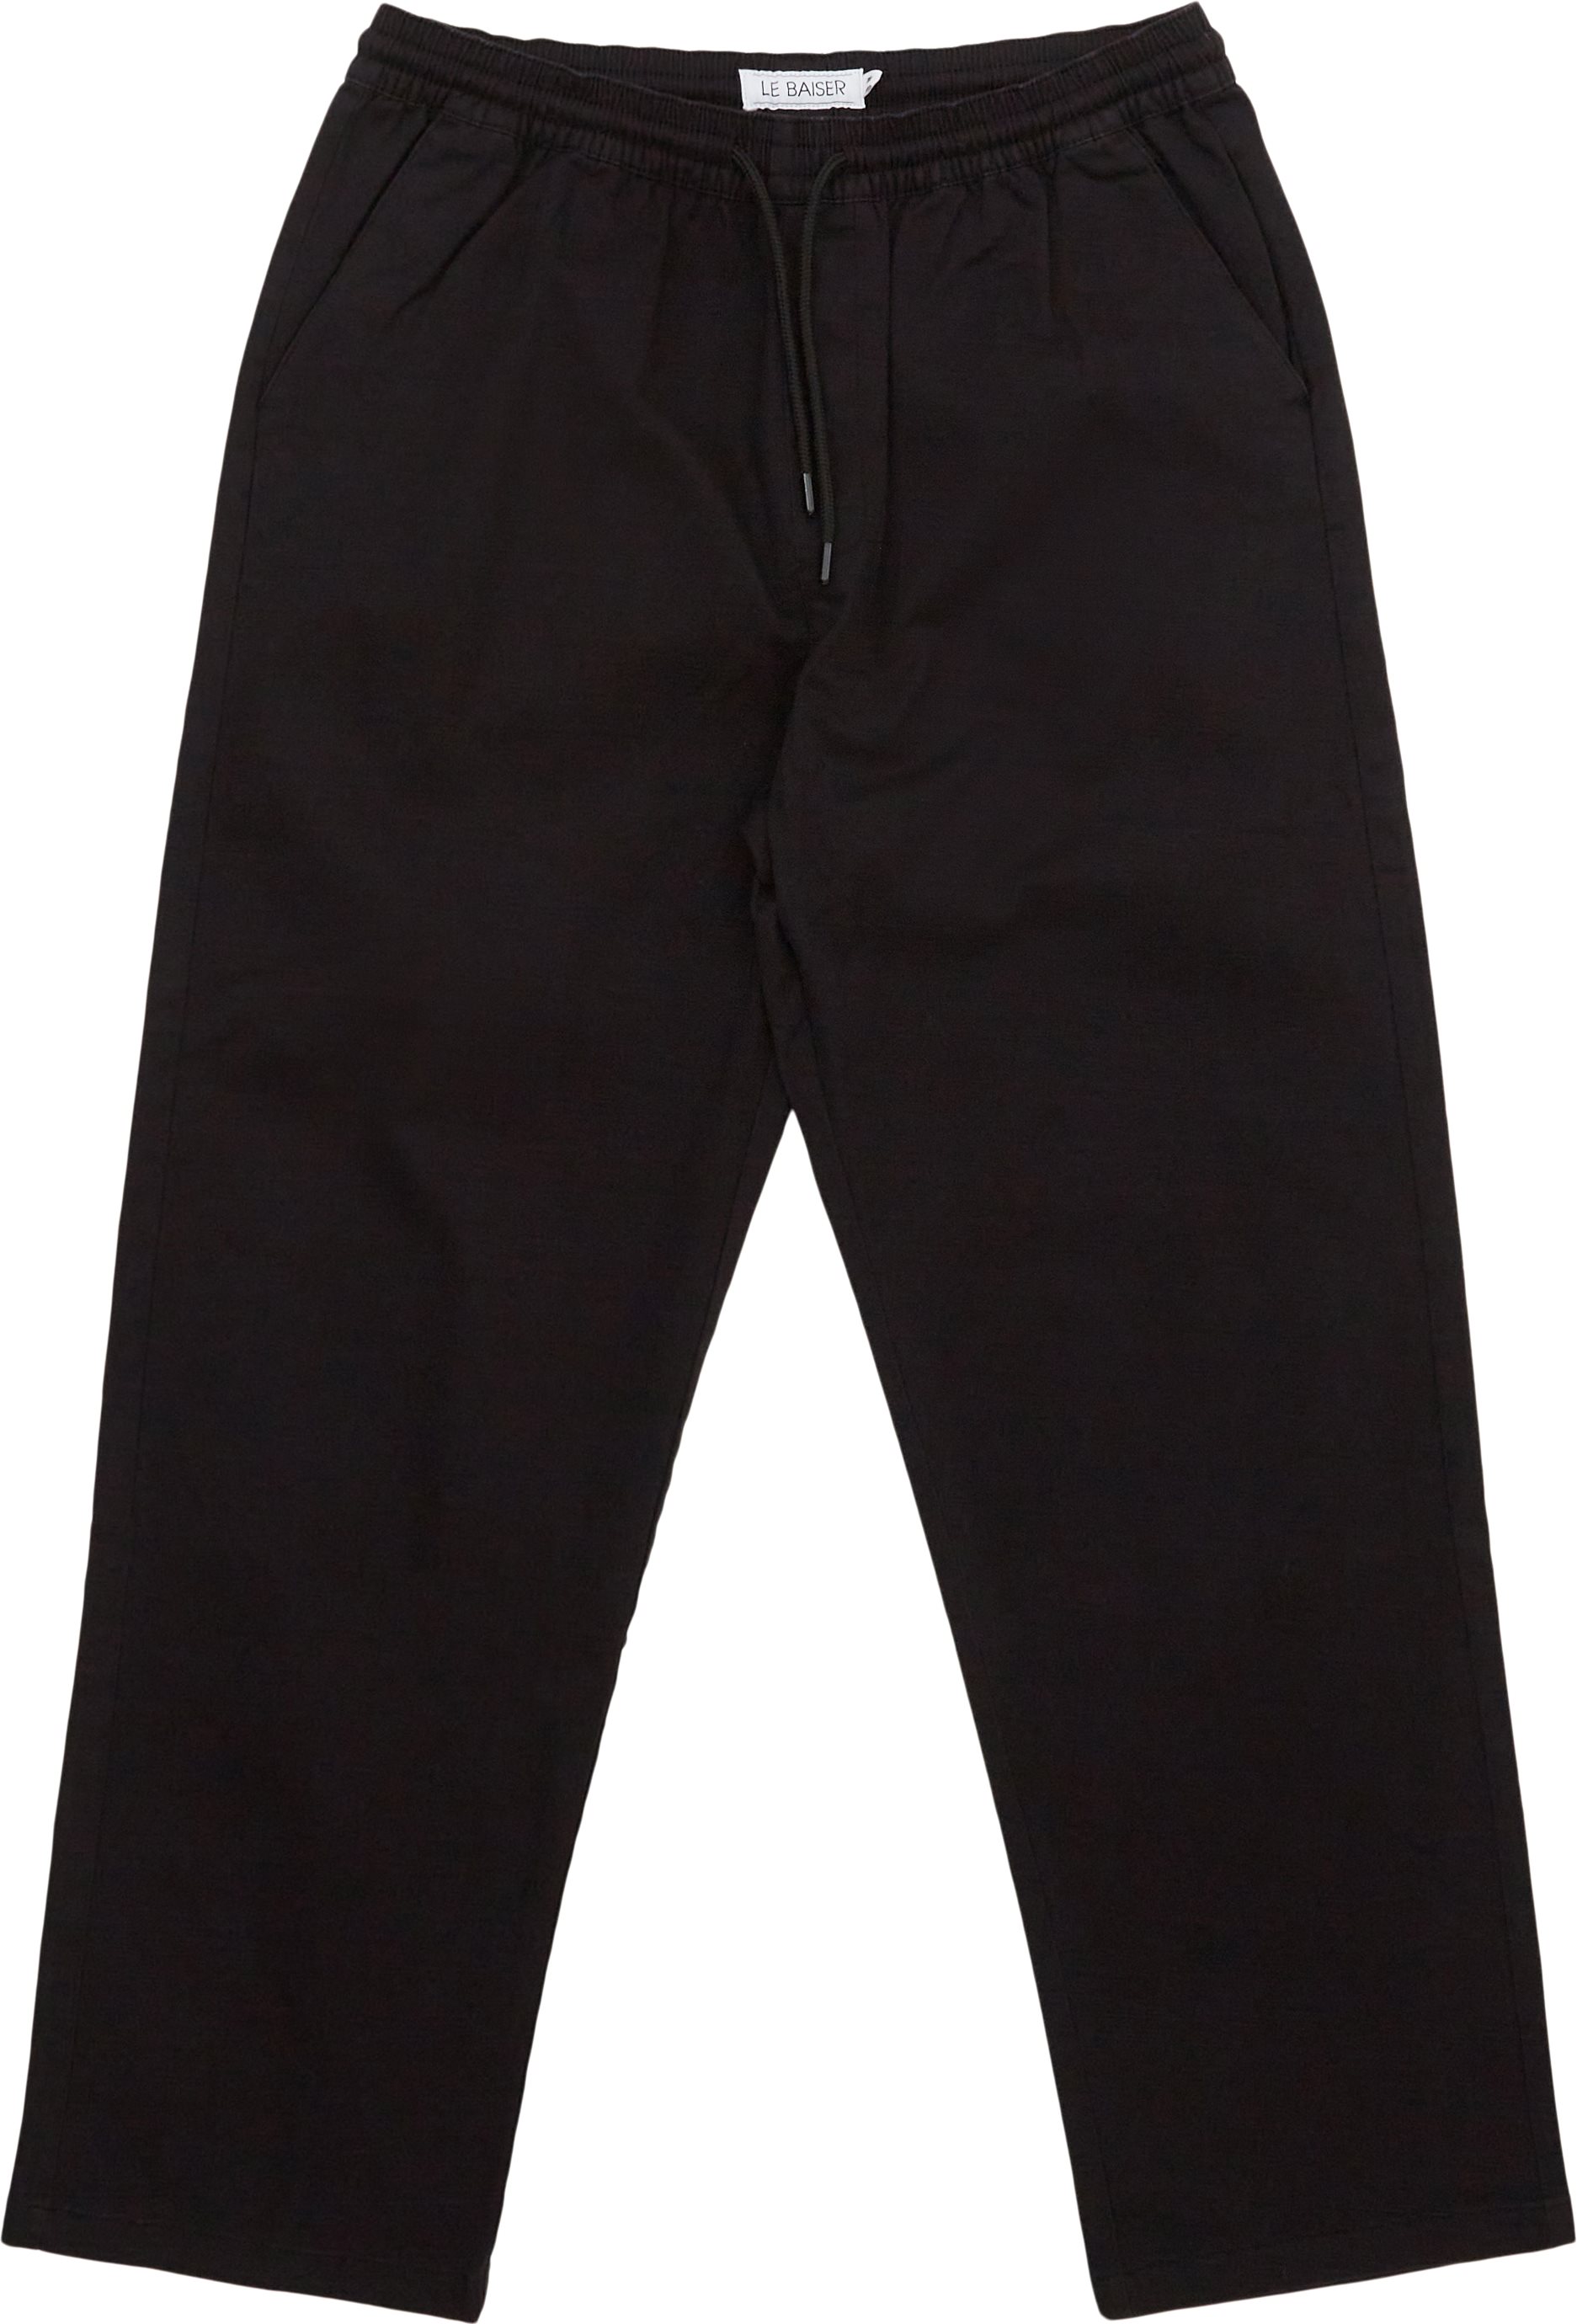 Le Baiser Trousers CLAMART Black